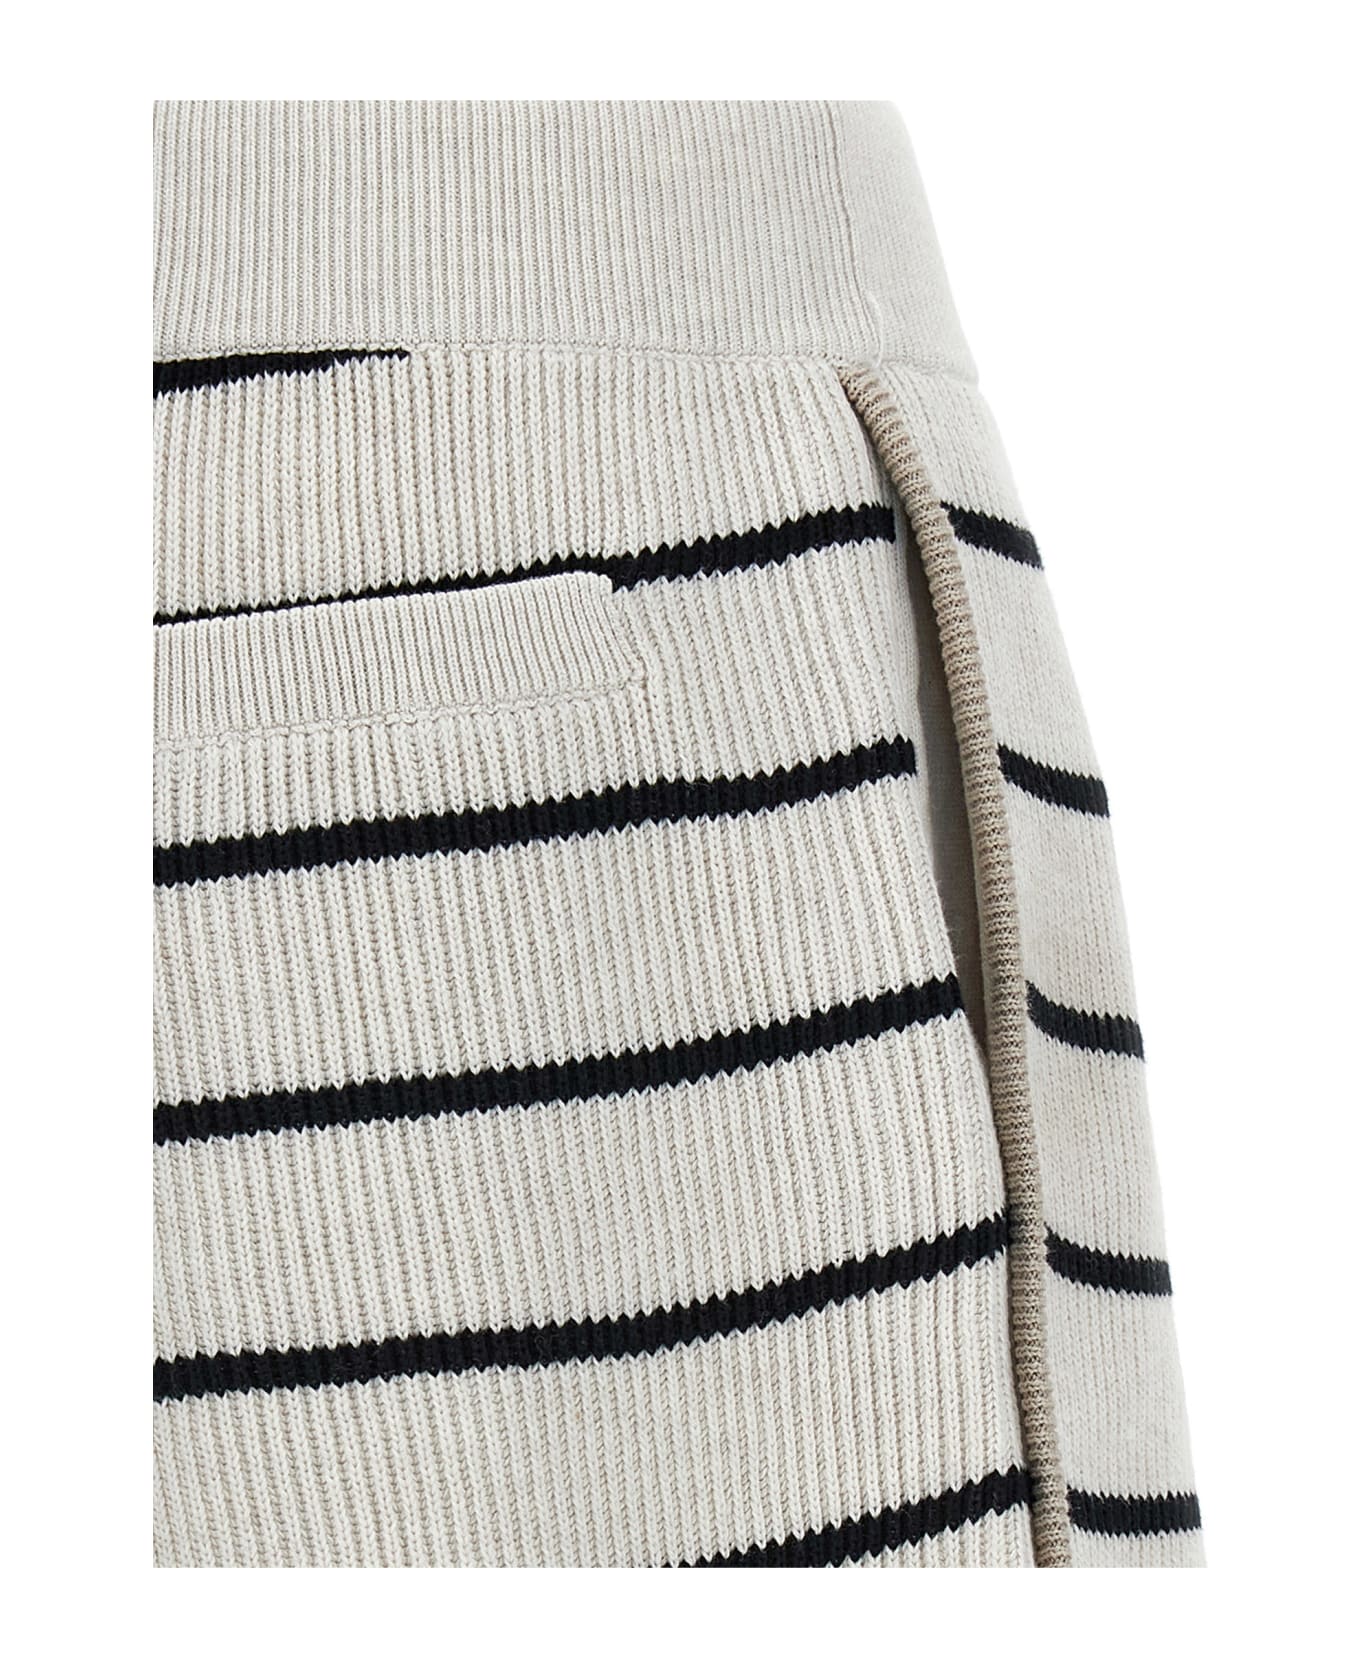 Brunello Cucinelli Striped Shorts - White